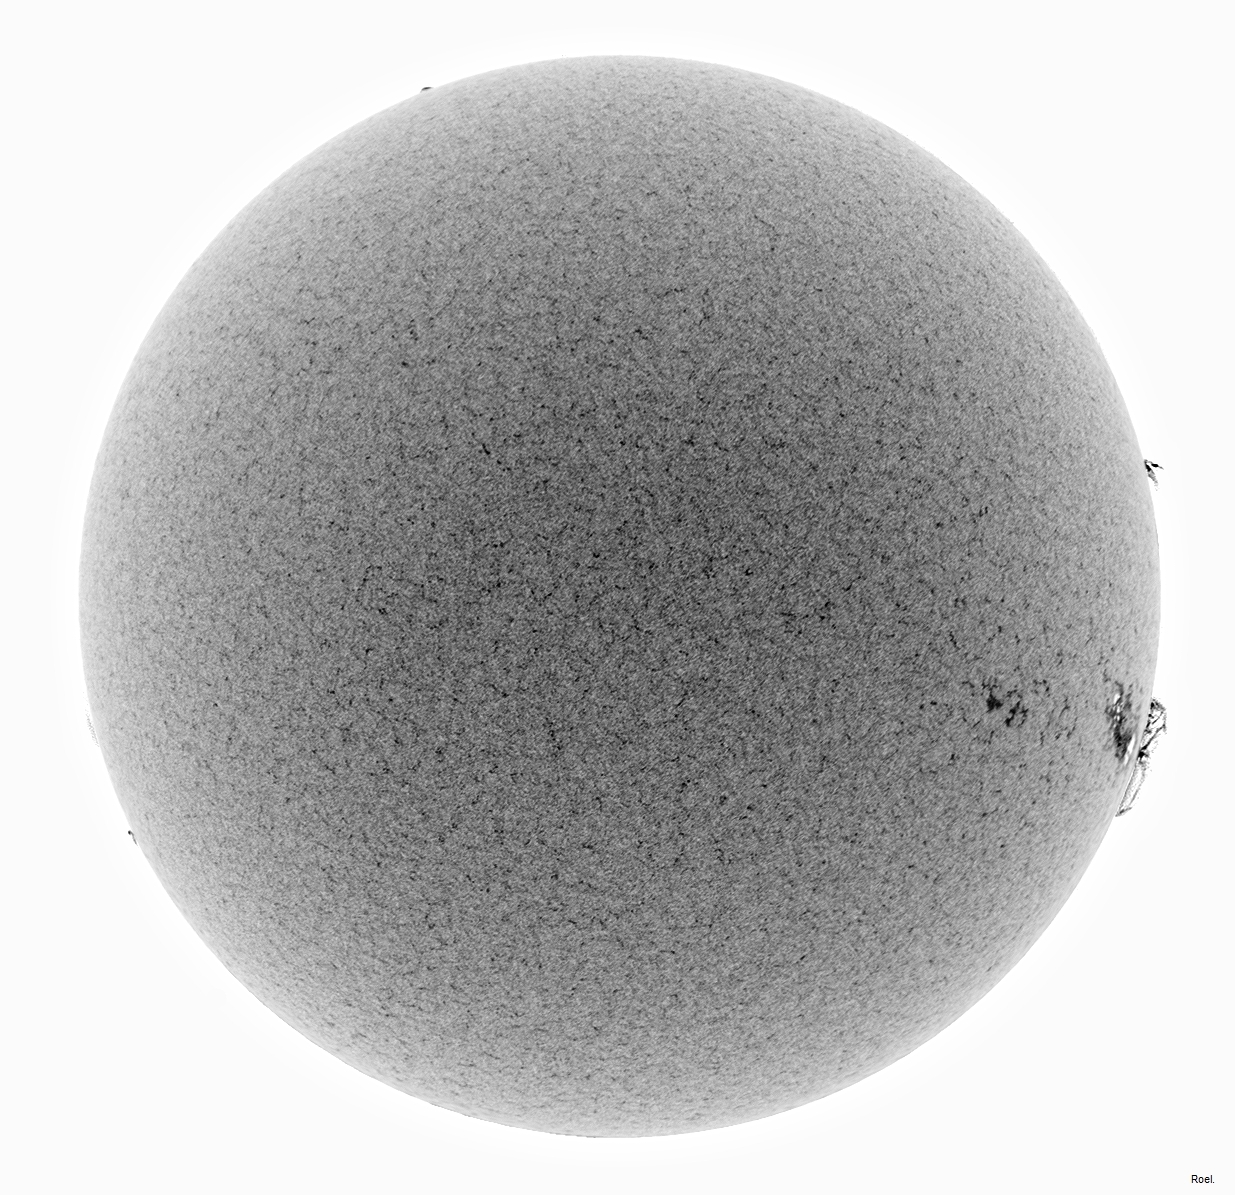 Sol del 23 de marzo del 2019-Meade-CaK-PSTmod-2neg.jpg